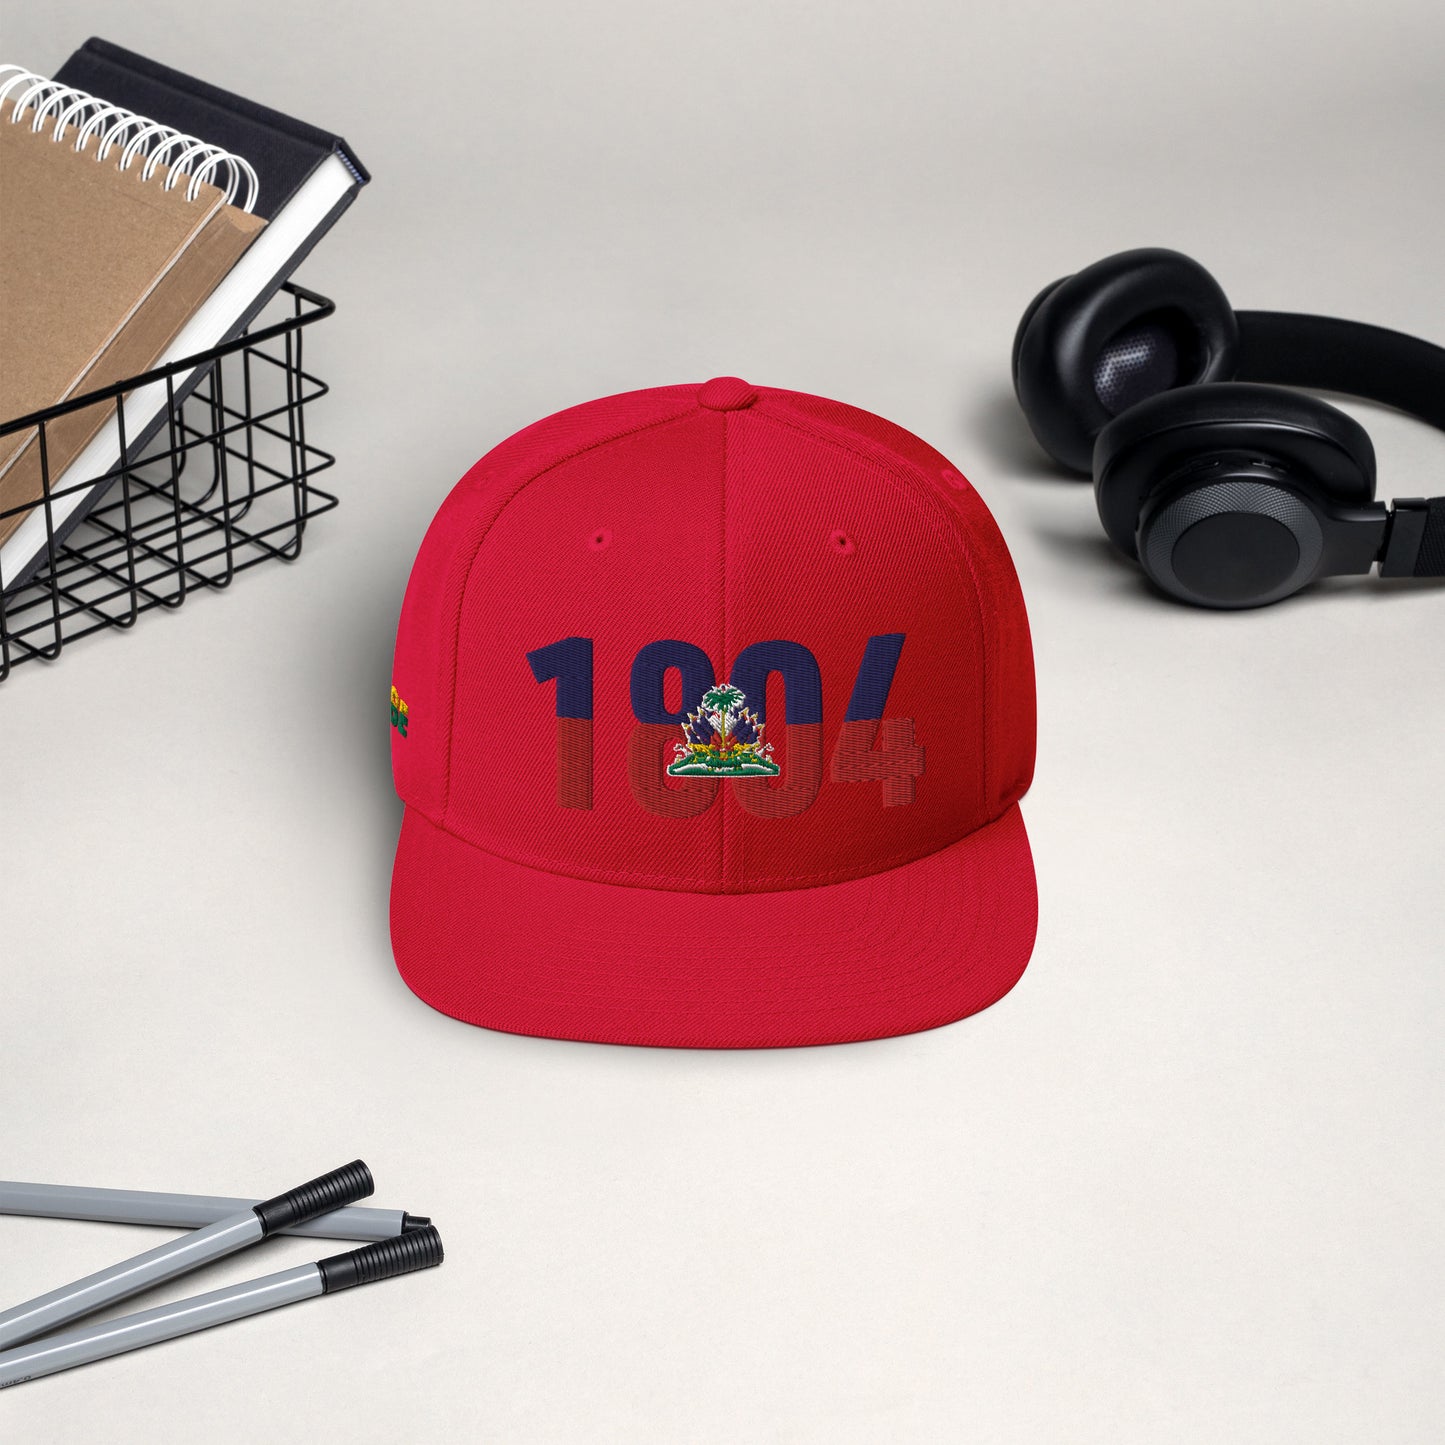 HAITI 1804 INDEPENENCE INSPIRED Snapback Hat